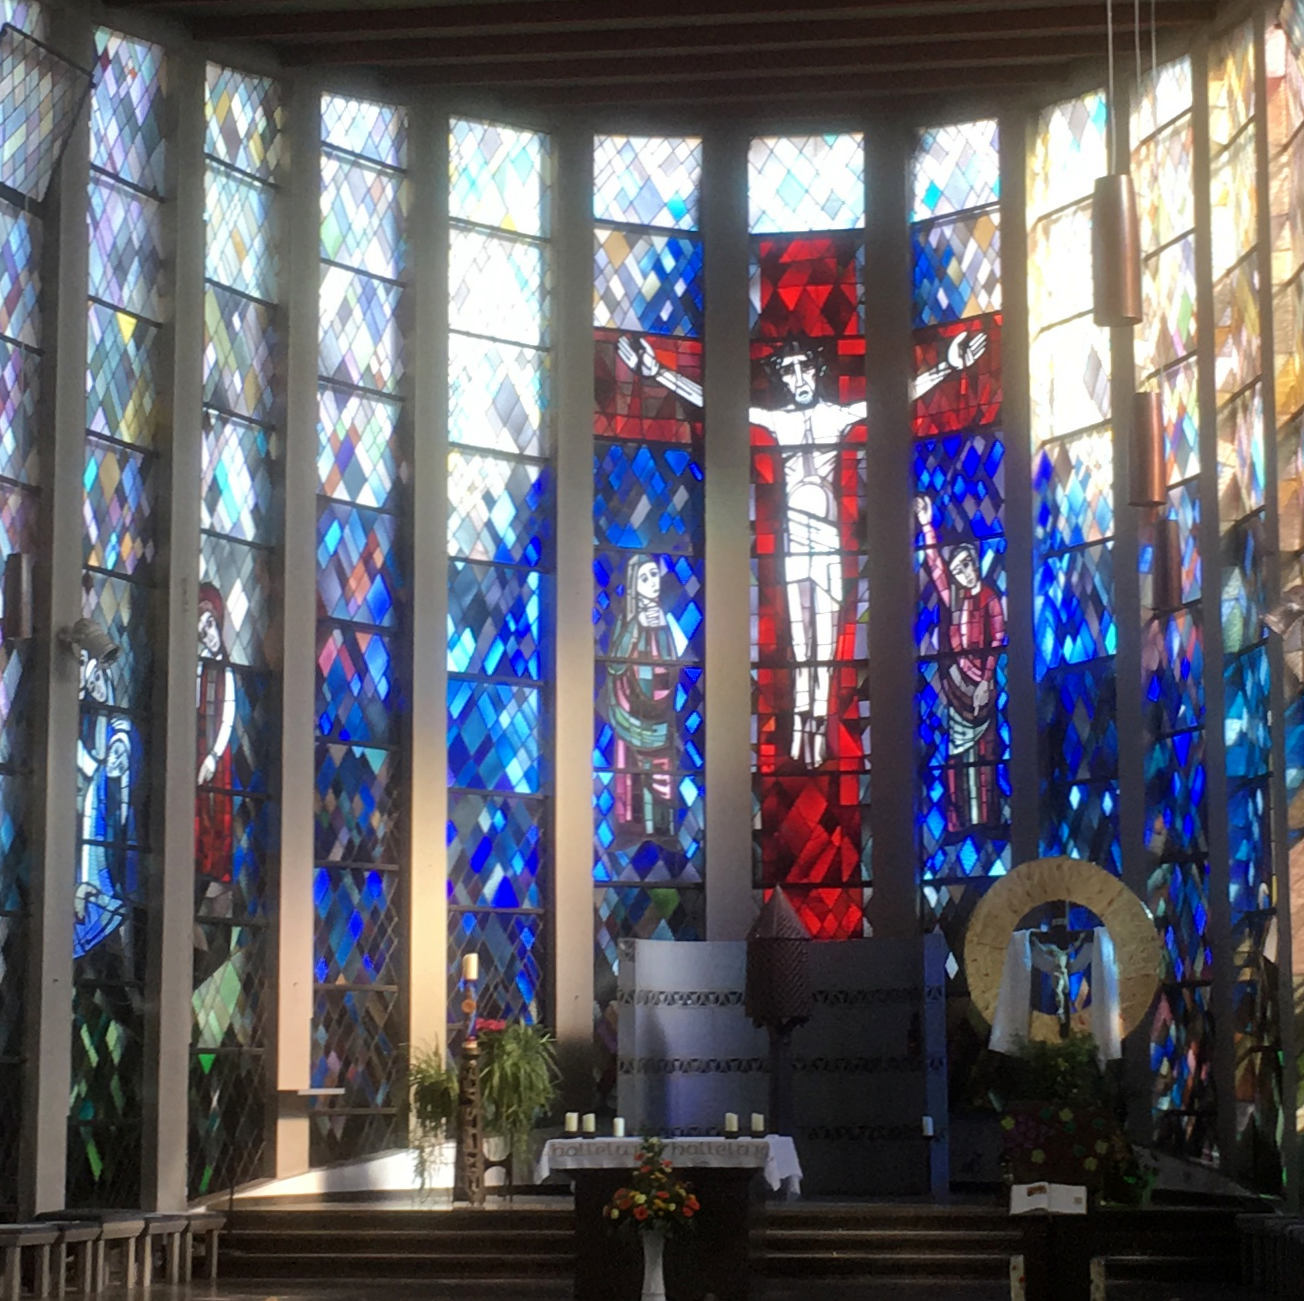 Das eindrucksvolle Chorfenster der kath. Kirche St. Andreas in Altenstadt